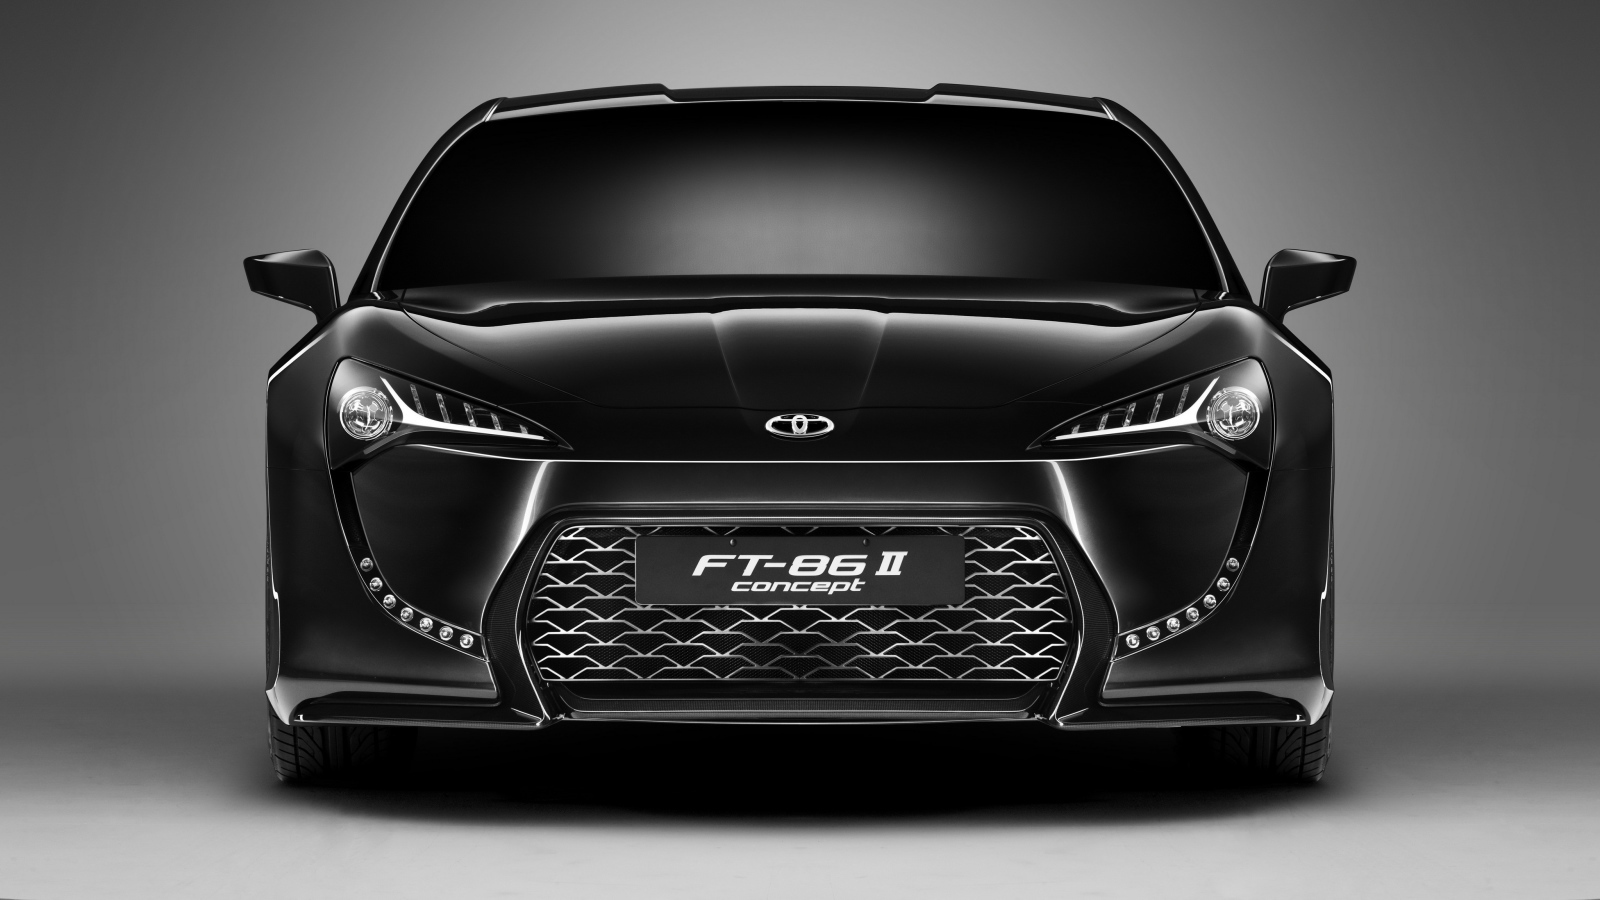 Черный автомобиль Toyota FT-86 II Concept вид спереди